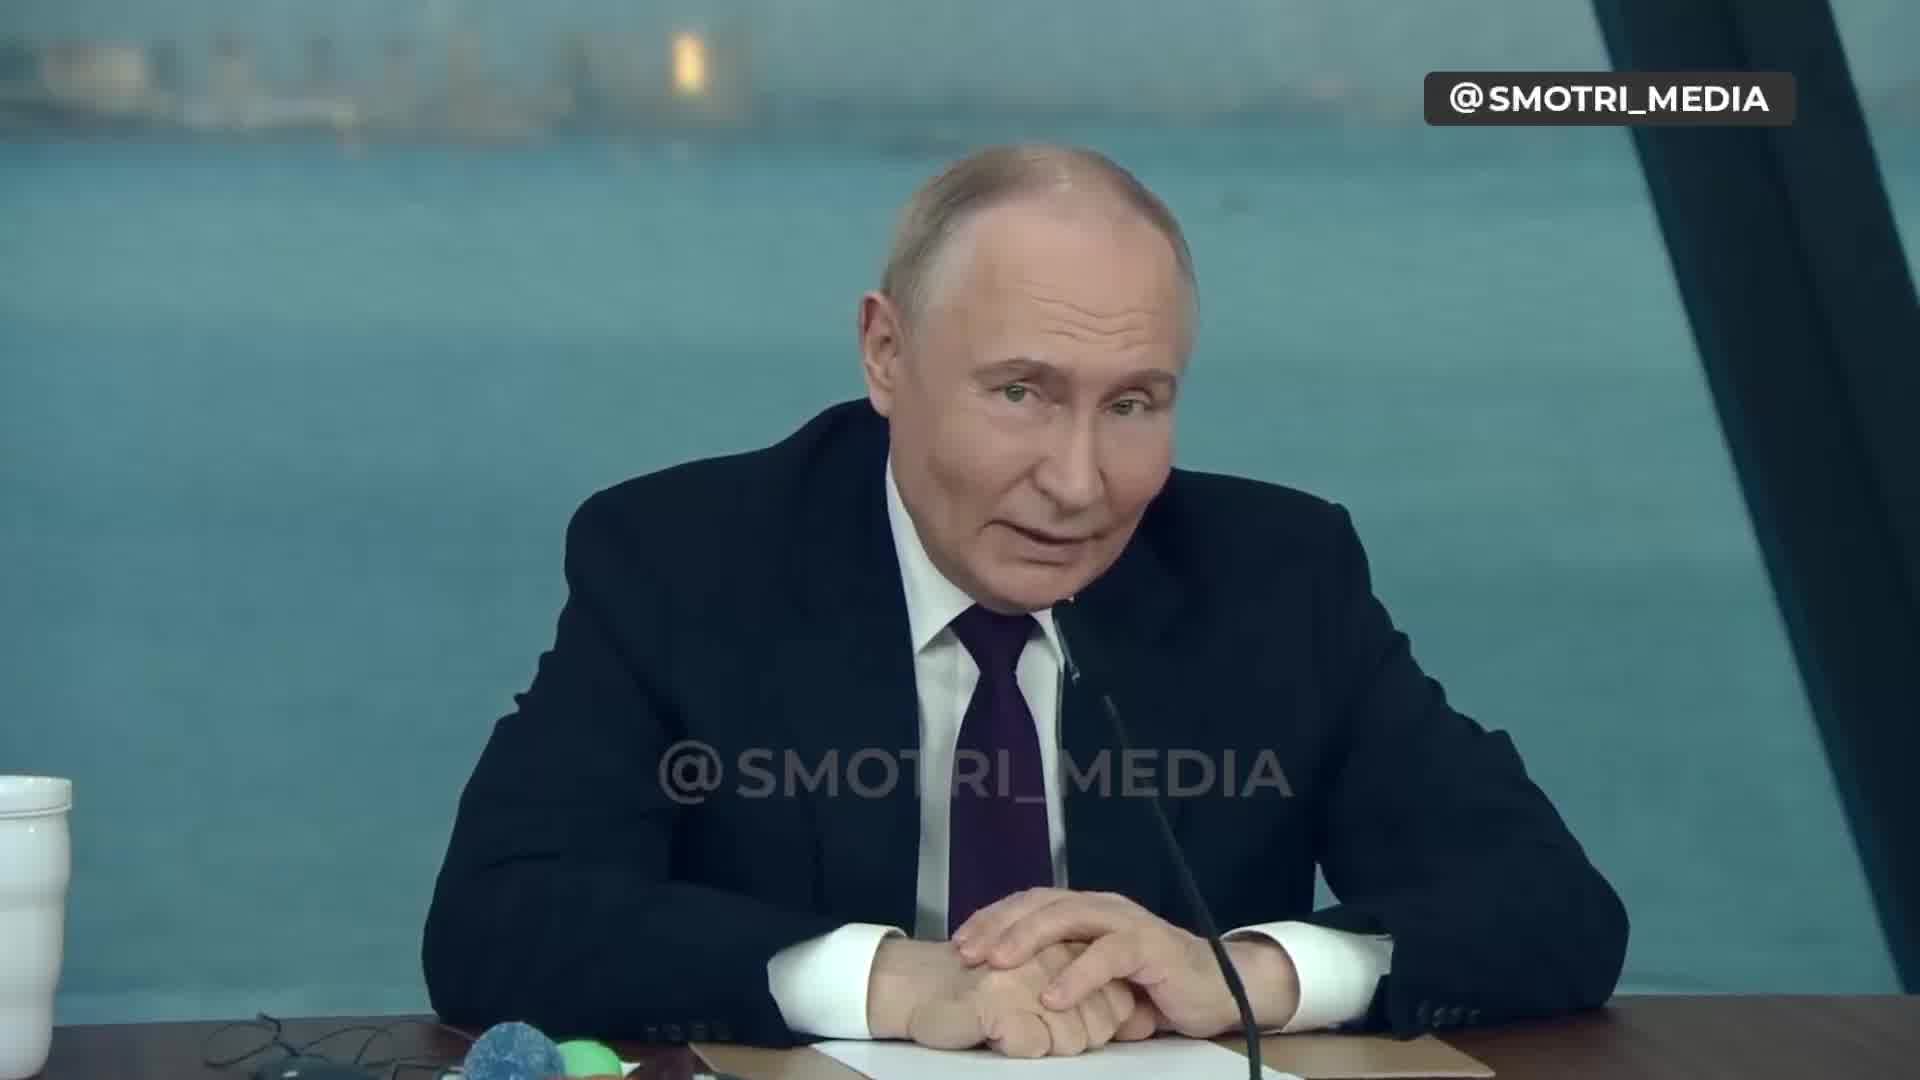 Putin mówi, że Rosja rozważa dostarczenie broni trzeciemu podmiotowi w innych częściach świata, który uderzy w kraje, które dostarczyły broń Ukrainie